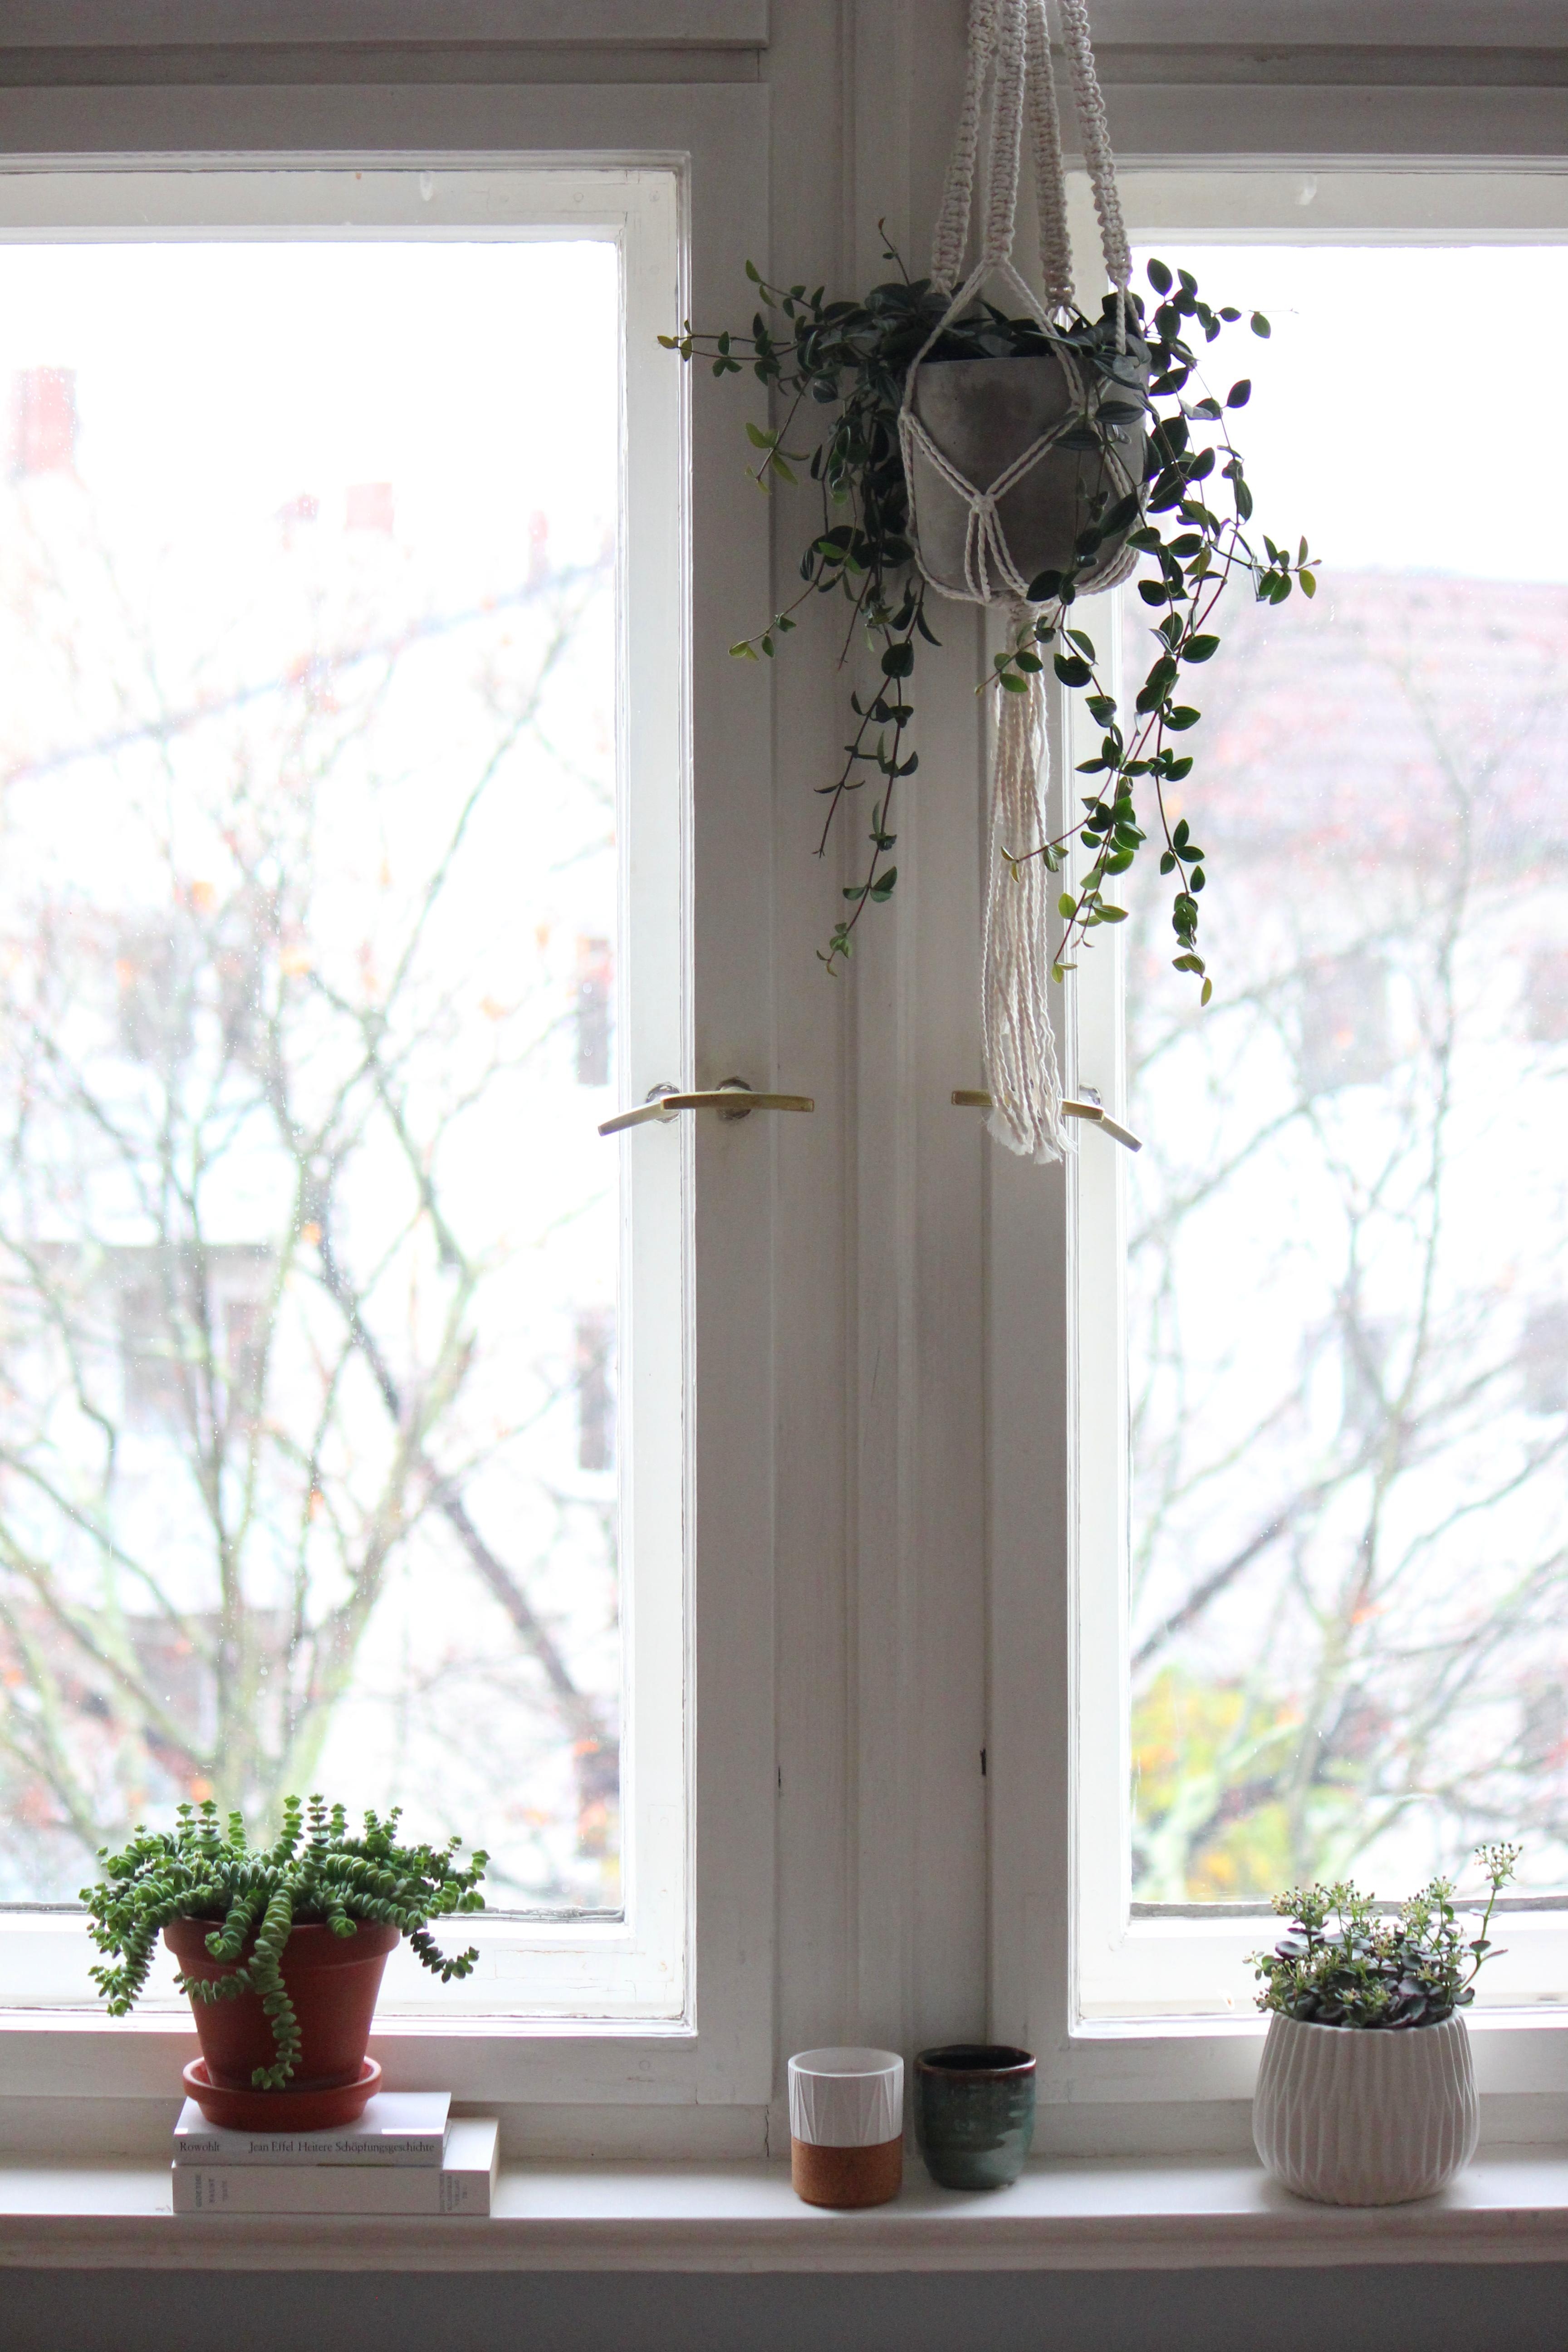 Deko minimalistisch :) #fenster #altbau #pflanzen #greenliving